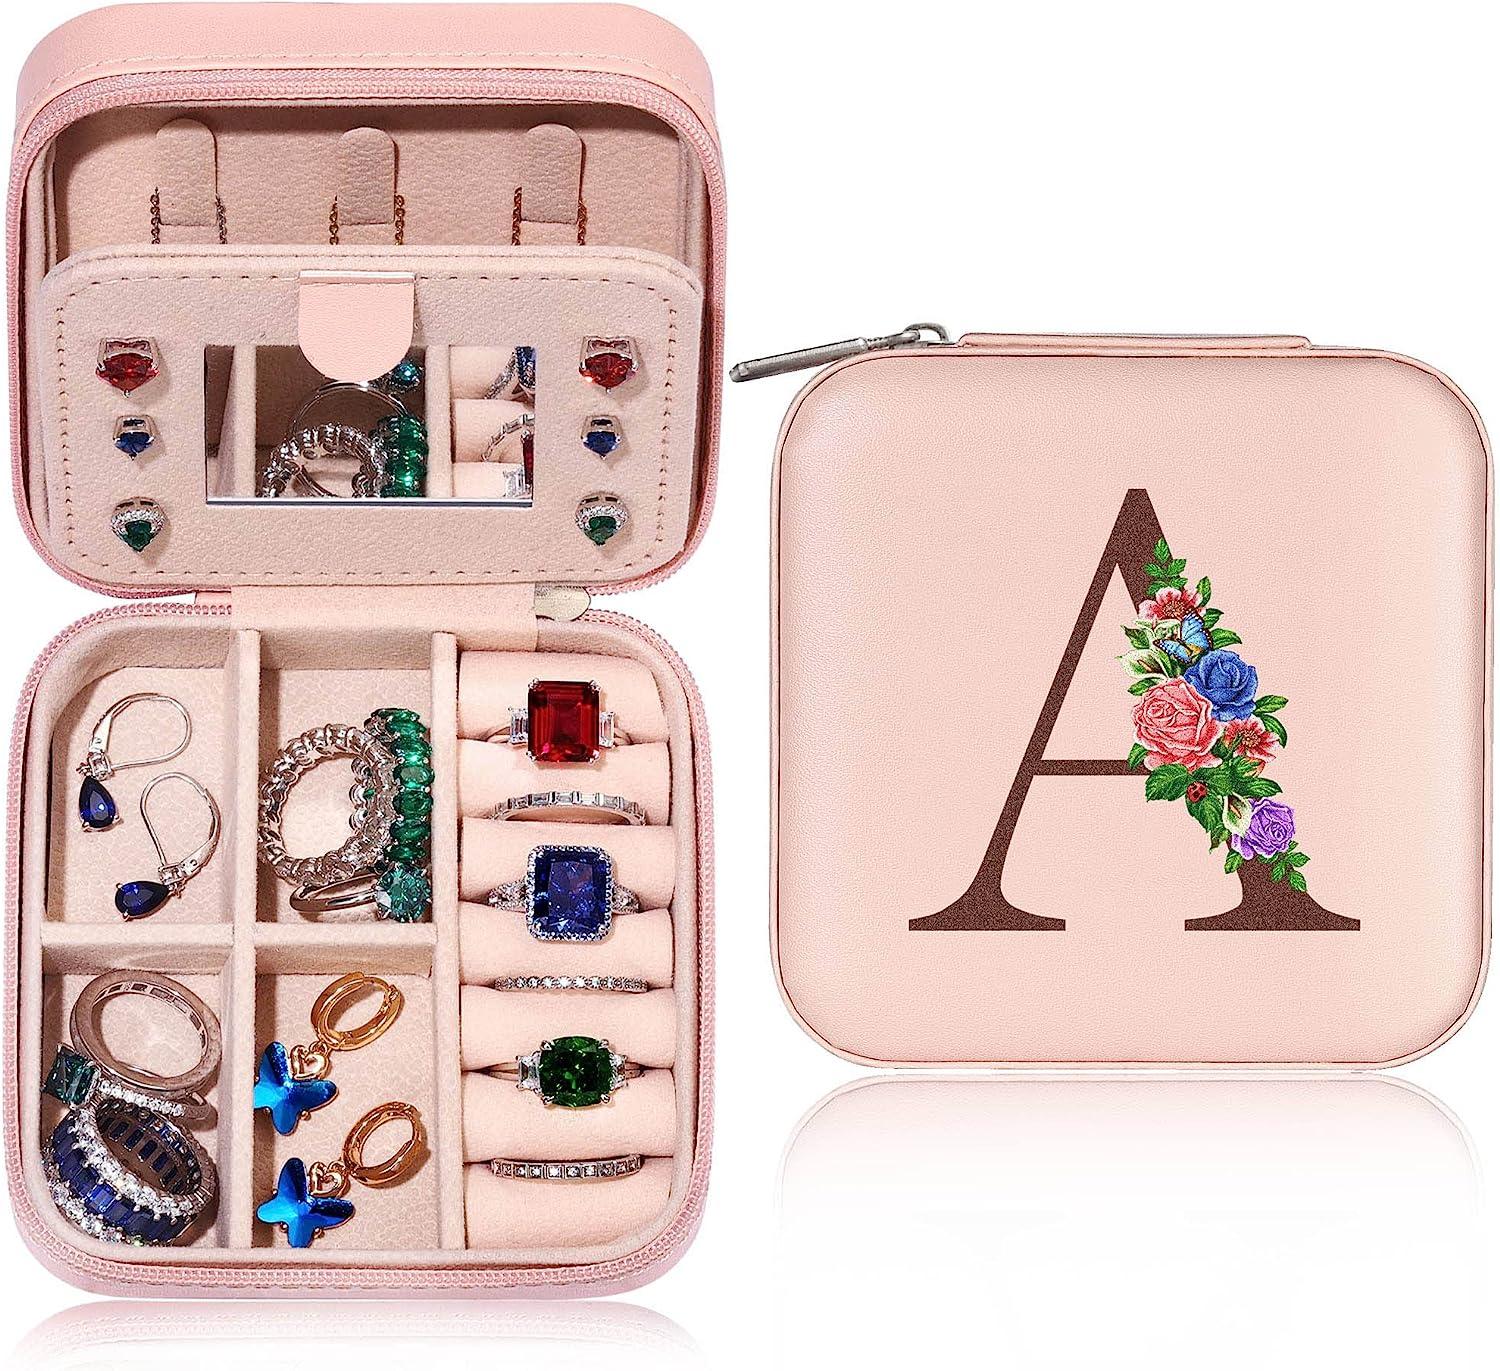 Yesteel Jewelry Case Jewelry Box Jewelry Organizer for $5.70